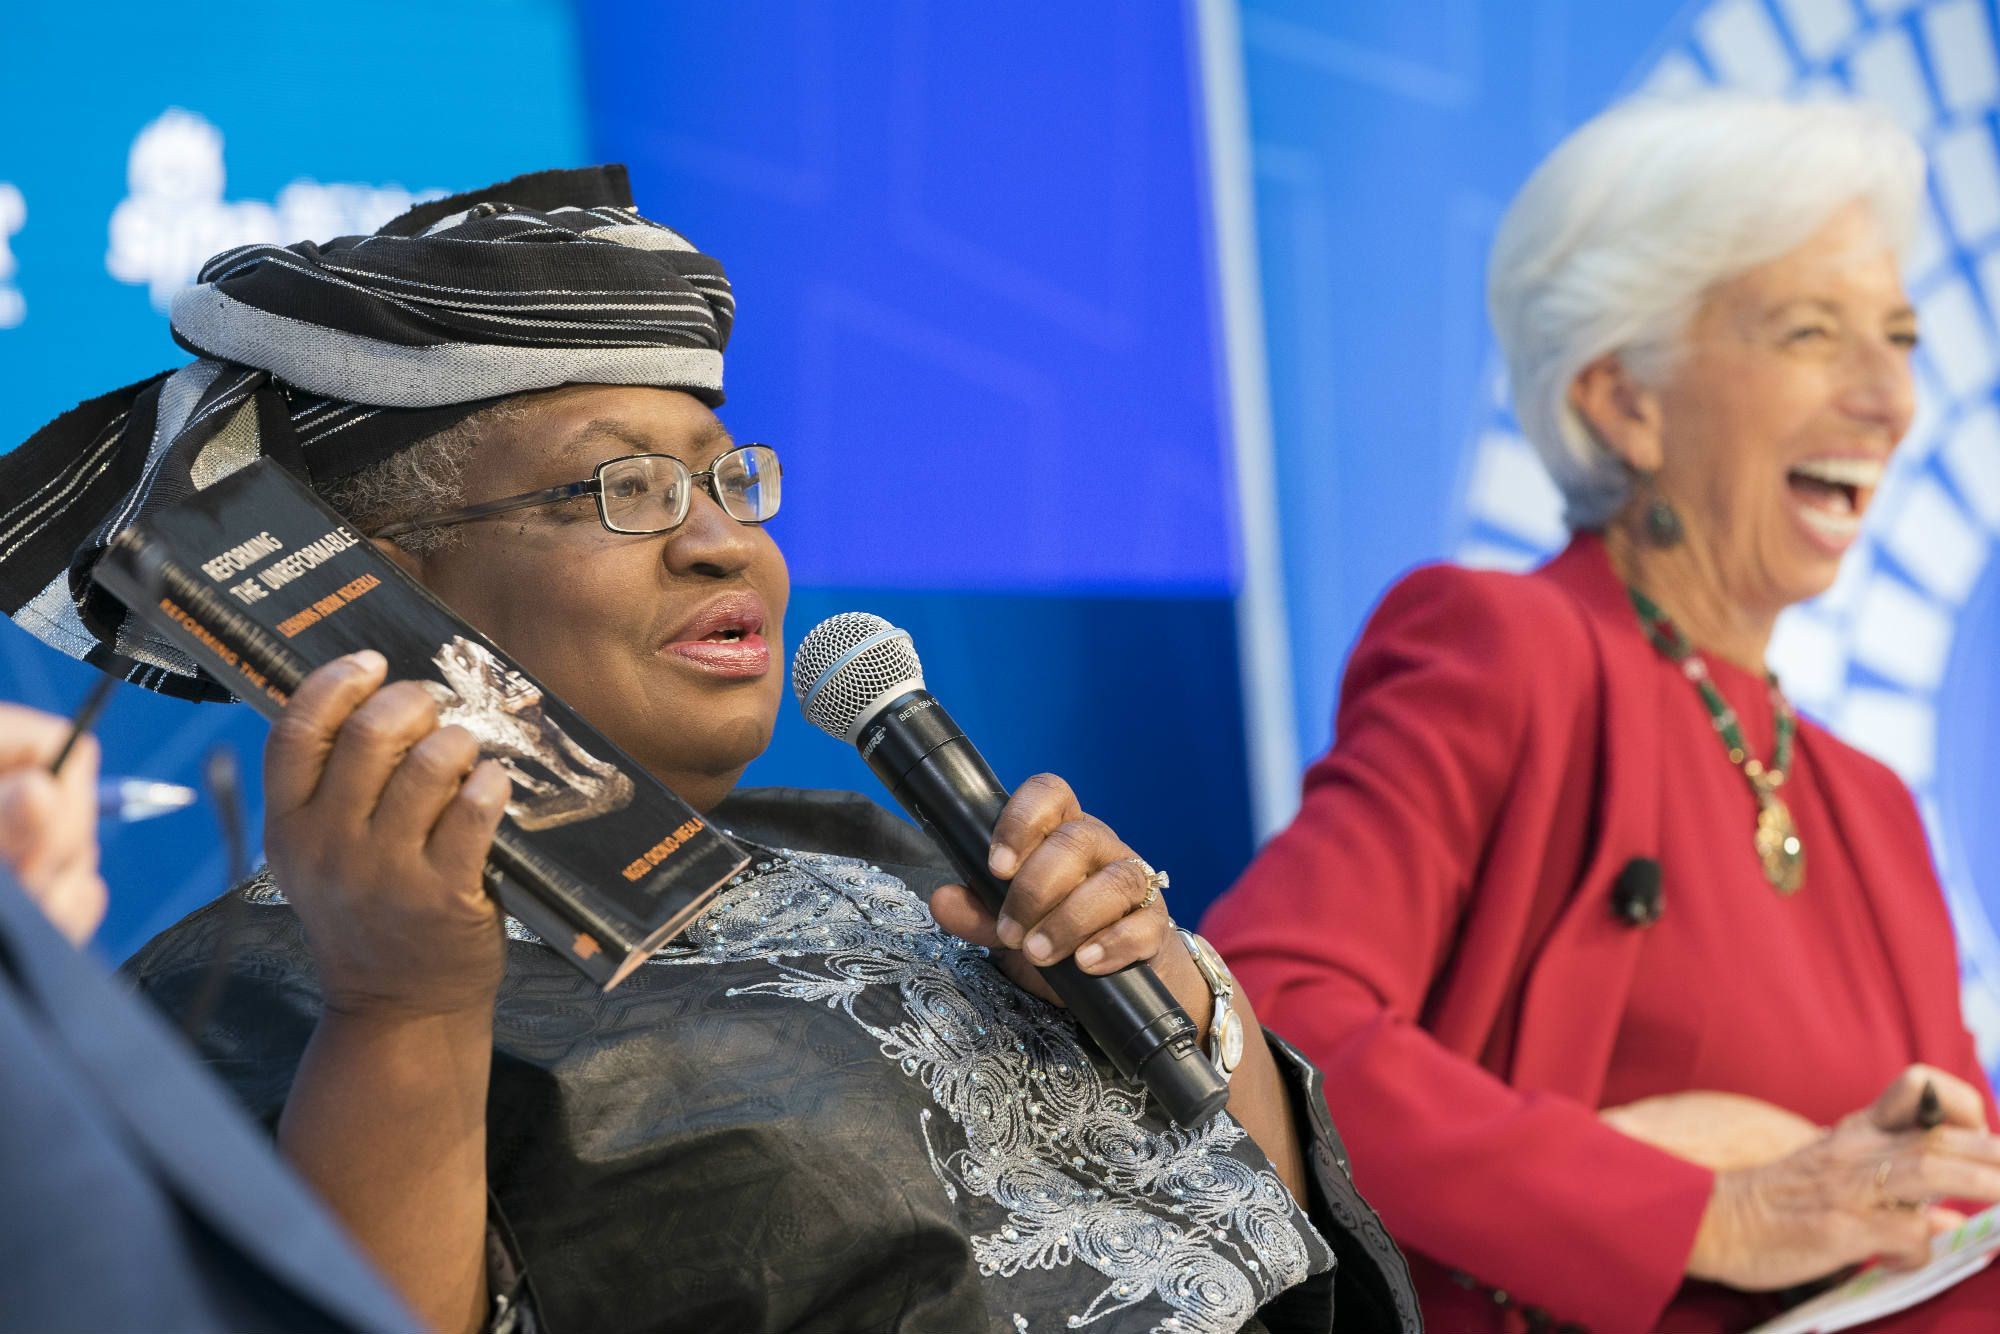 Résultat de recherche d'images pour "Ngozi Okonjo-Iweala"